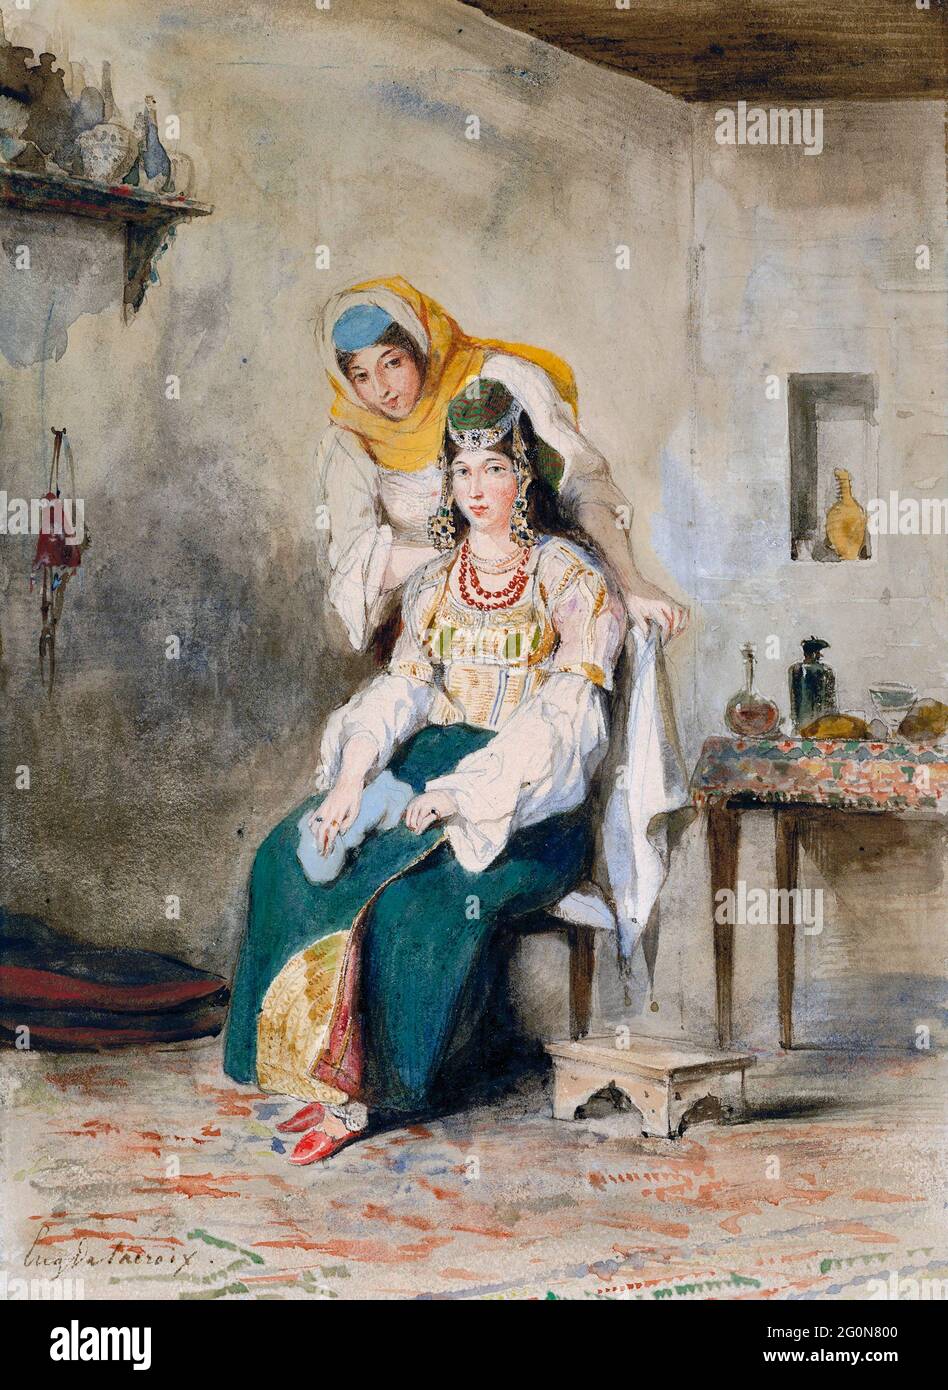 Saada, épouse d'Abraham Ben-Chimol, et Préciada, une de leurs filles par Eugène Delacroix (1798-163), aquarelle sur graphite sur papier vélin, 1832 Banque D'Images